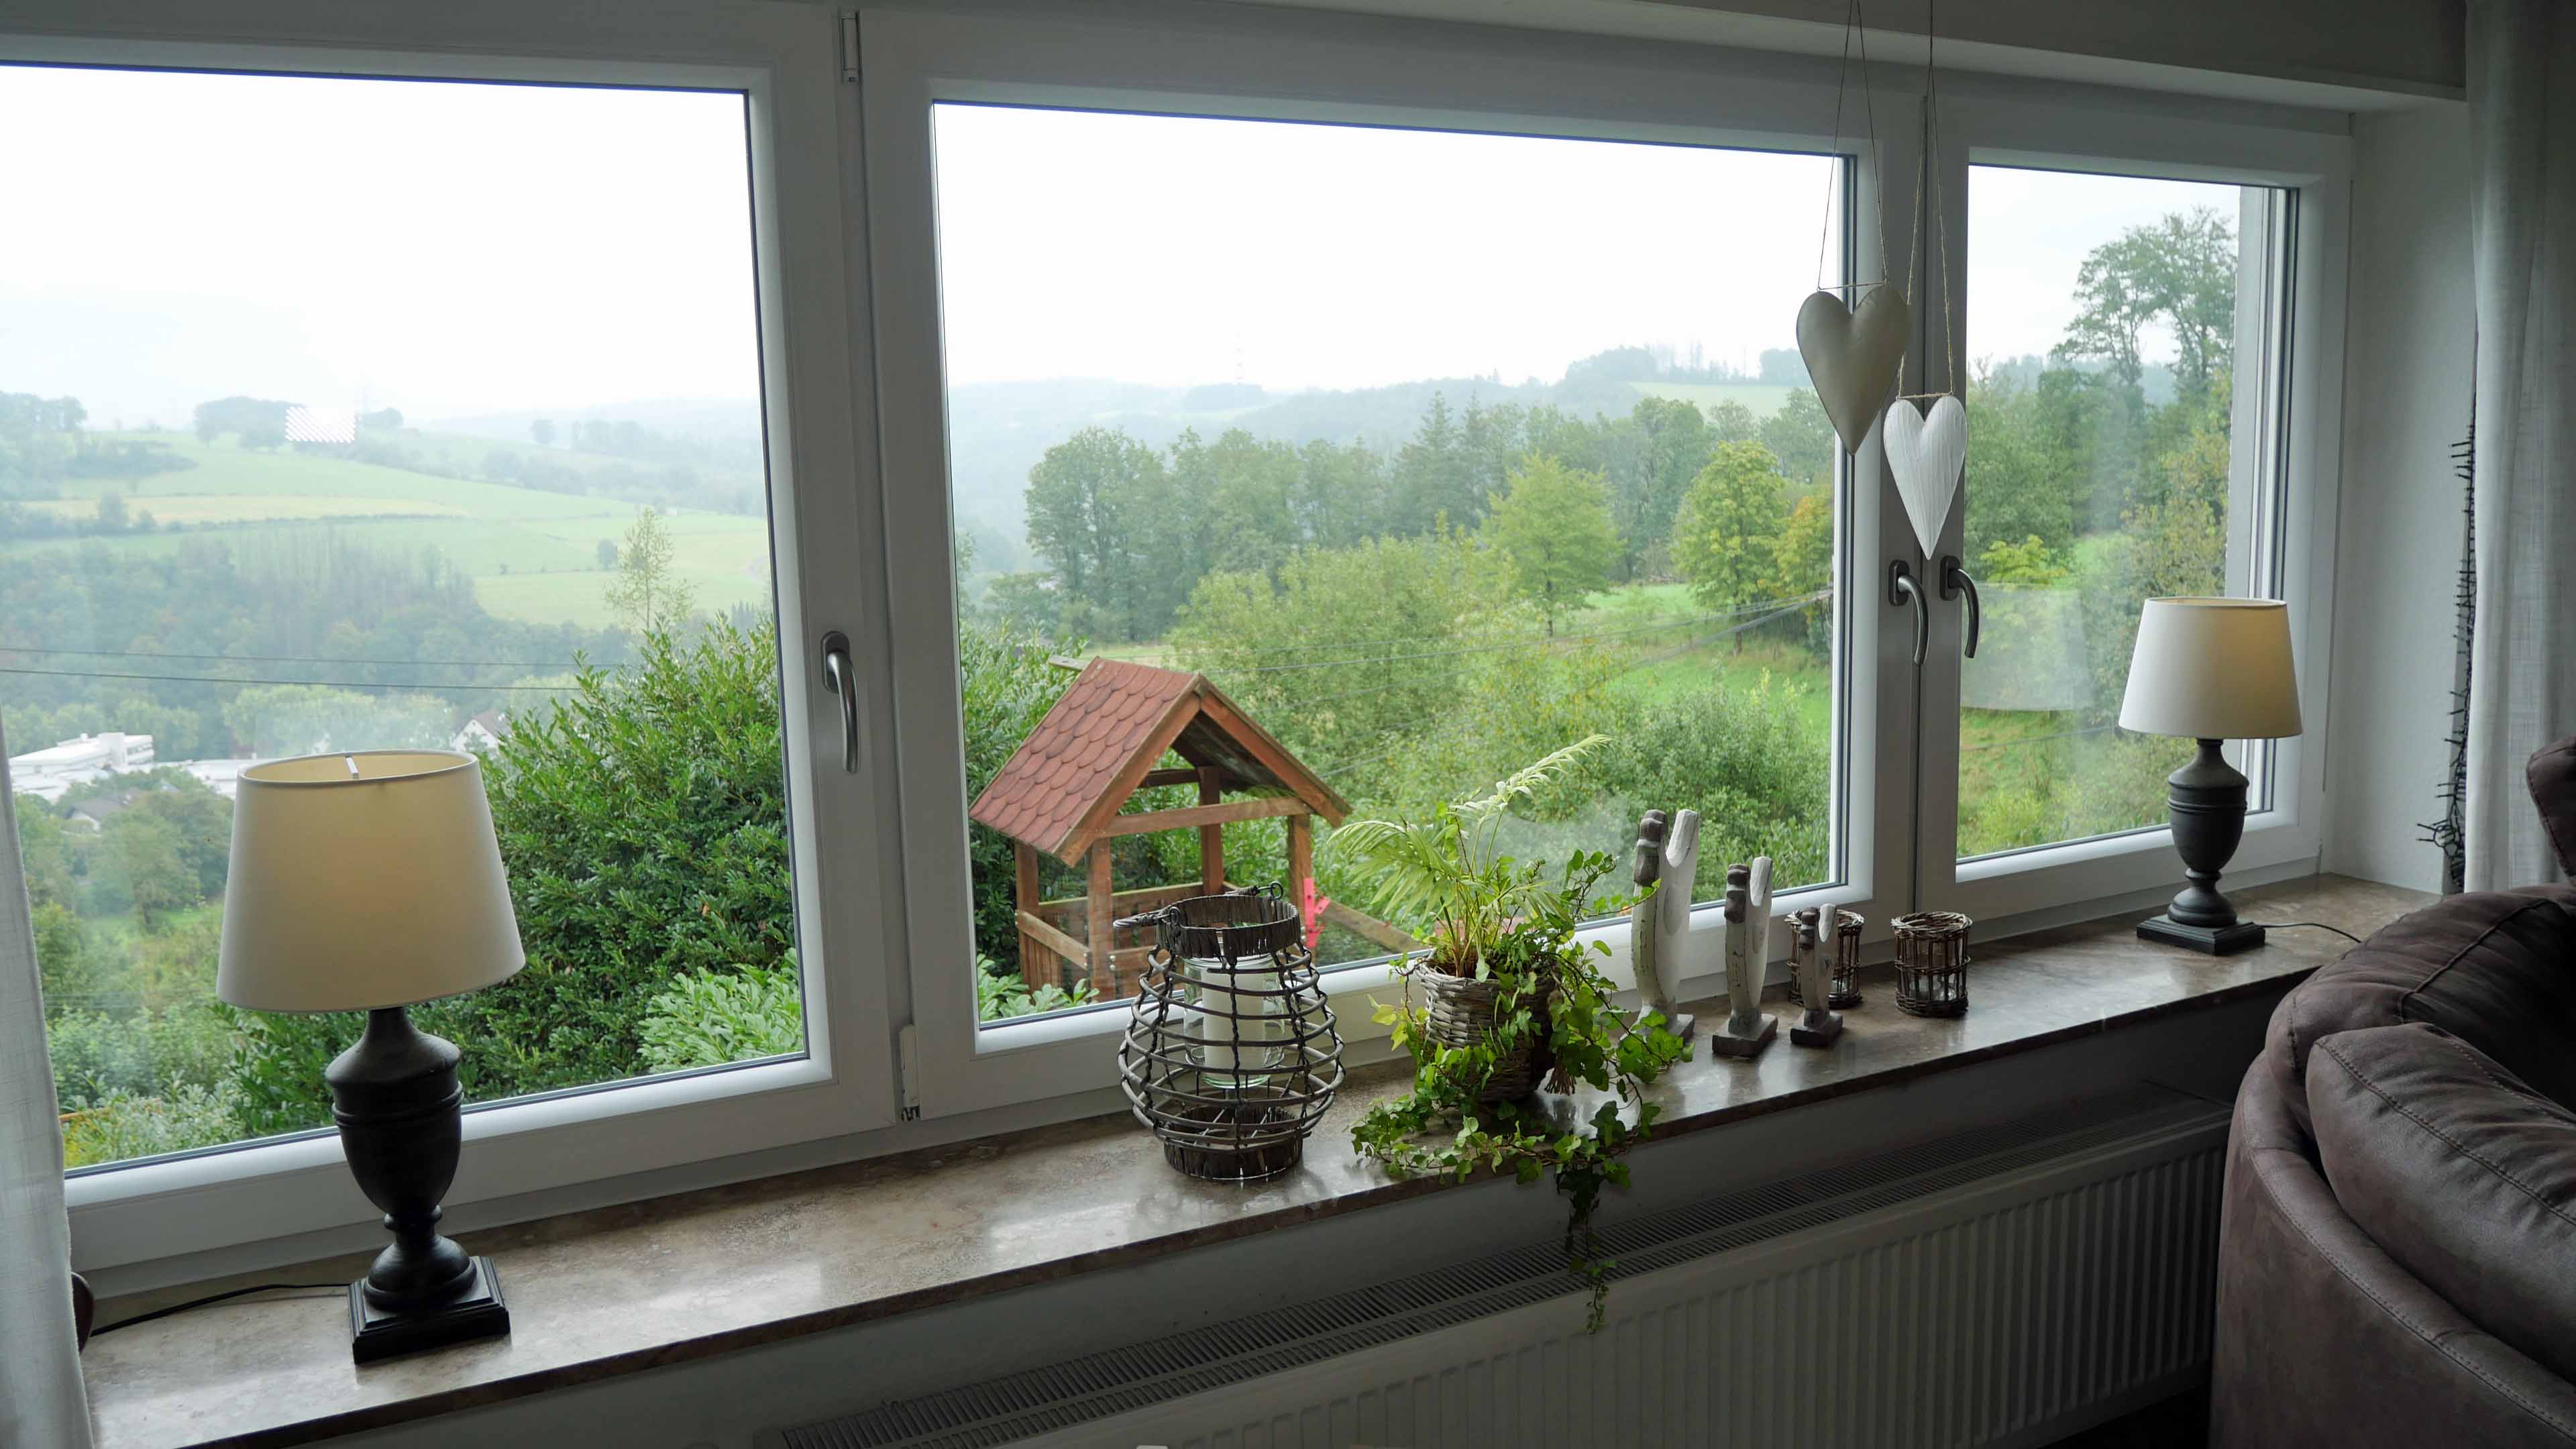 Morsbach: Bungalow mit ELW in Höhenlage, Panoramafenster mit Fernblick (alle Fenster neu)